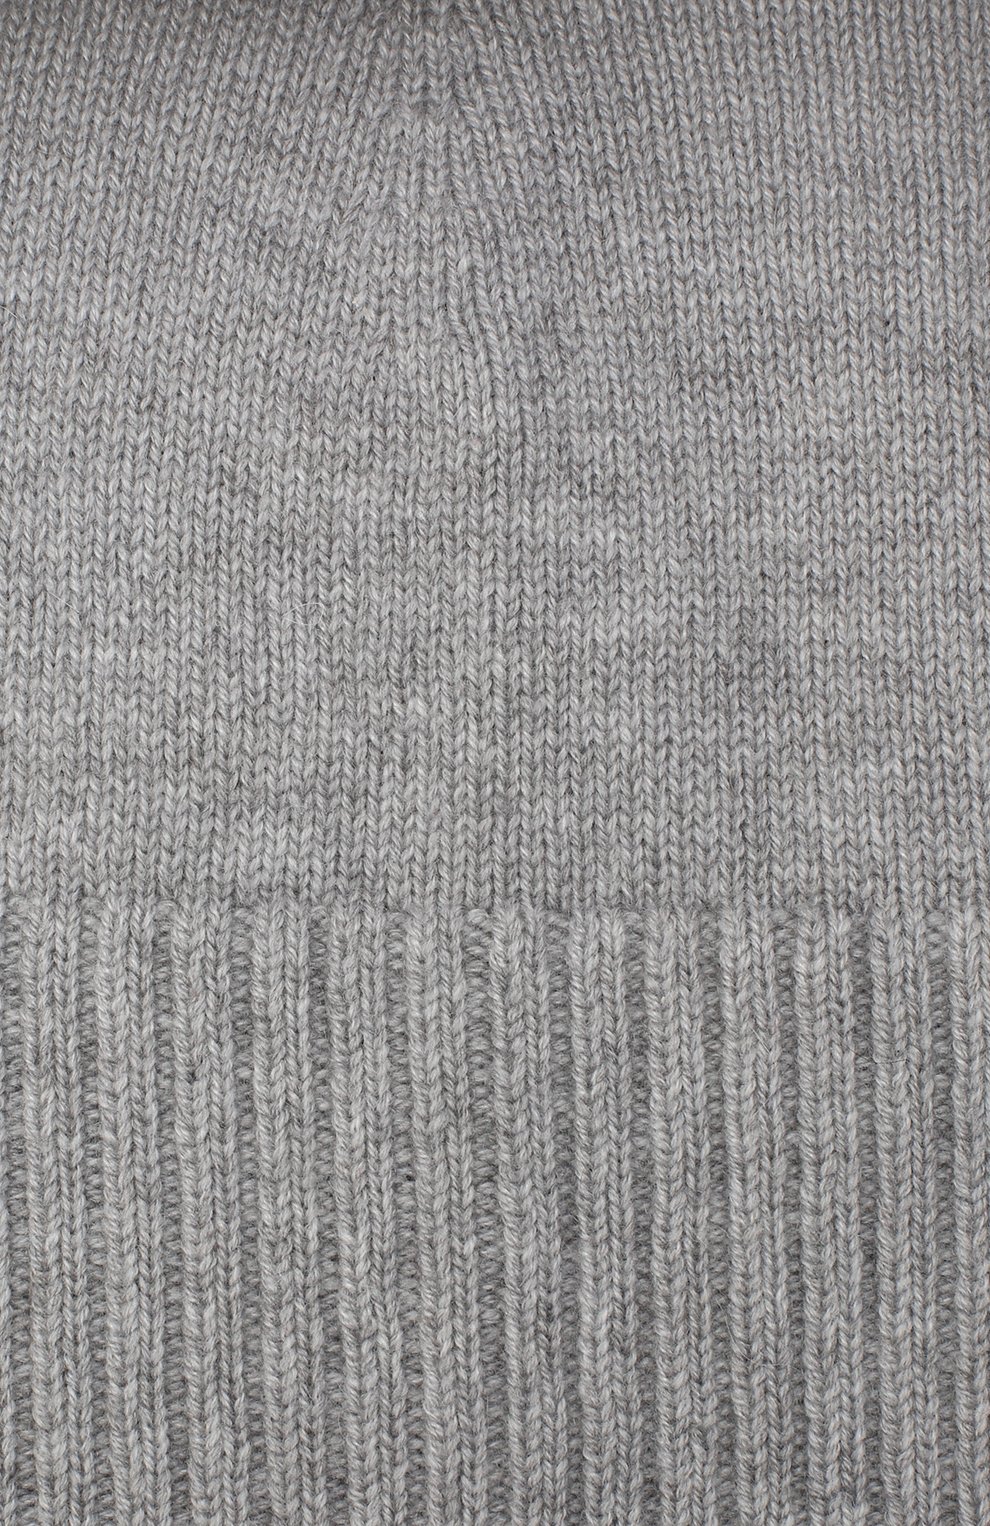 Мужская кашемировая шапка lisbon CANOE серого цвета, арт. 4912470 | Фото 3 (Материал: Текстиль, Кашемир, Шерсть; Кросс-КТ: Трикотаж)